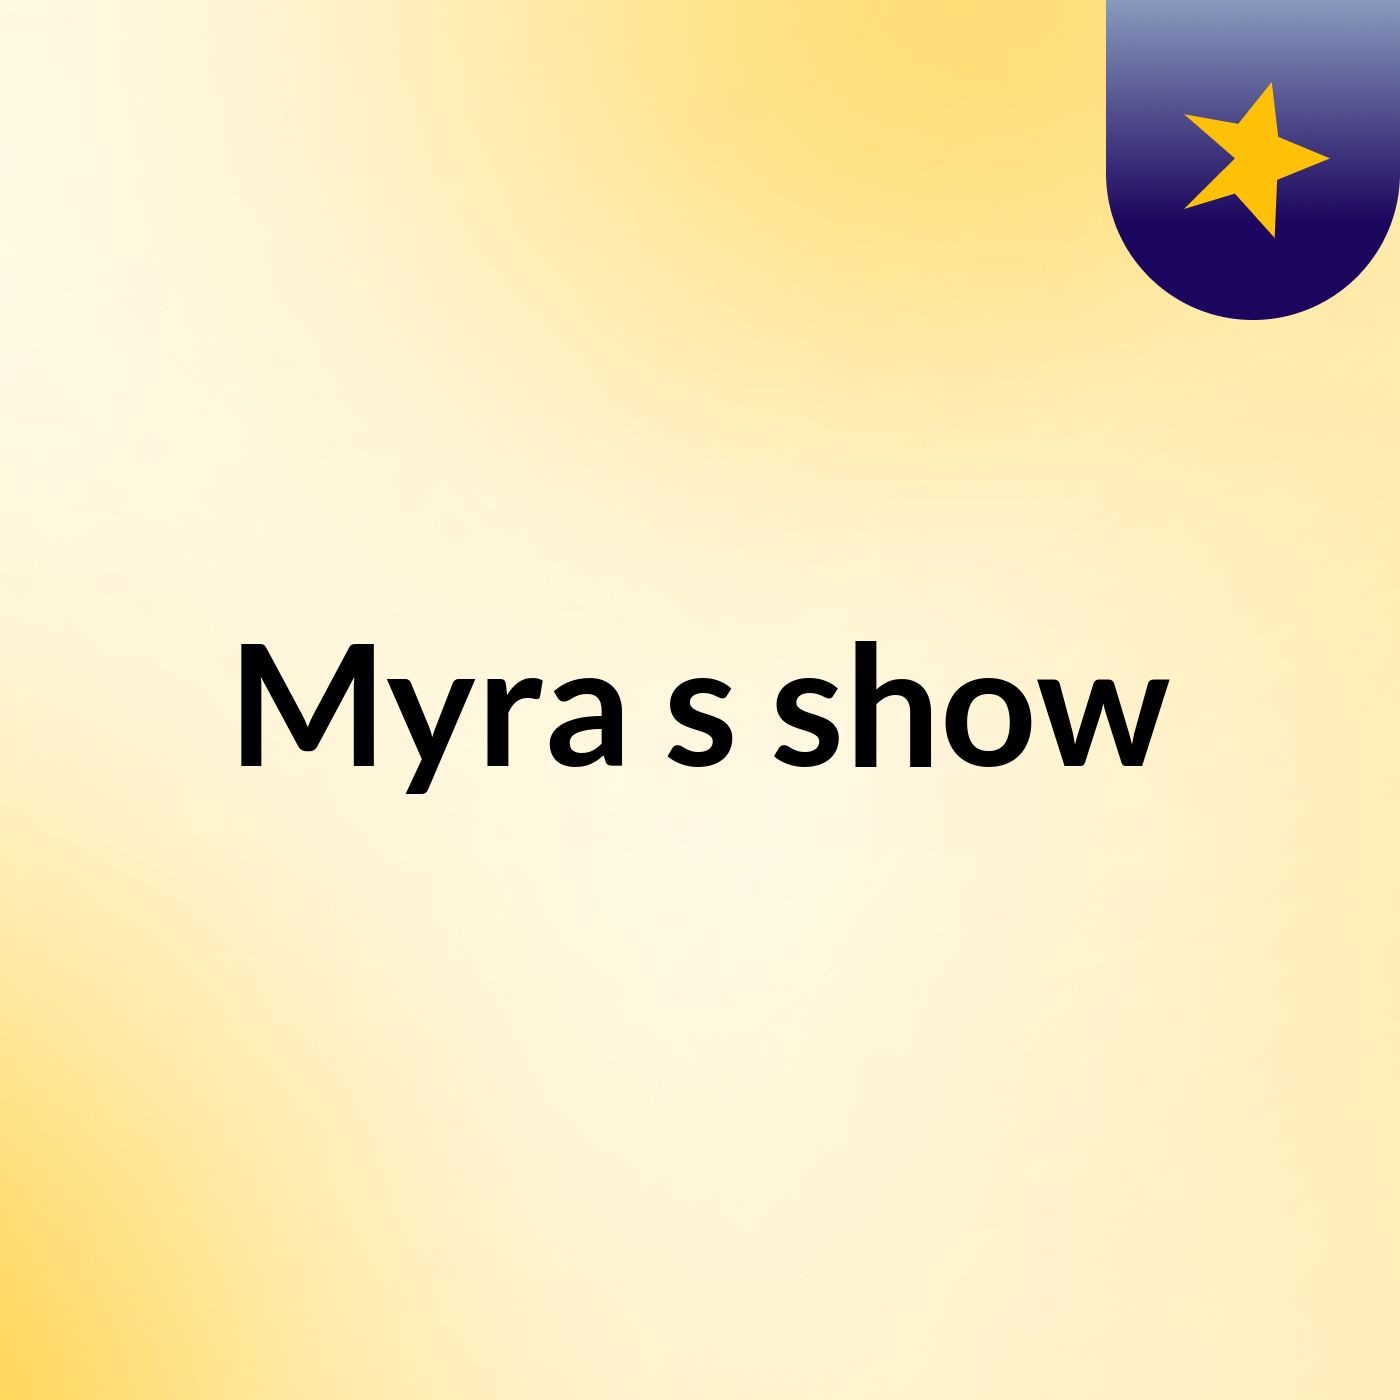 Myra's show